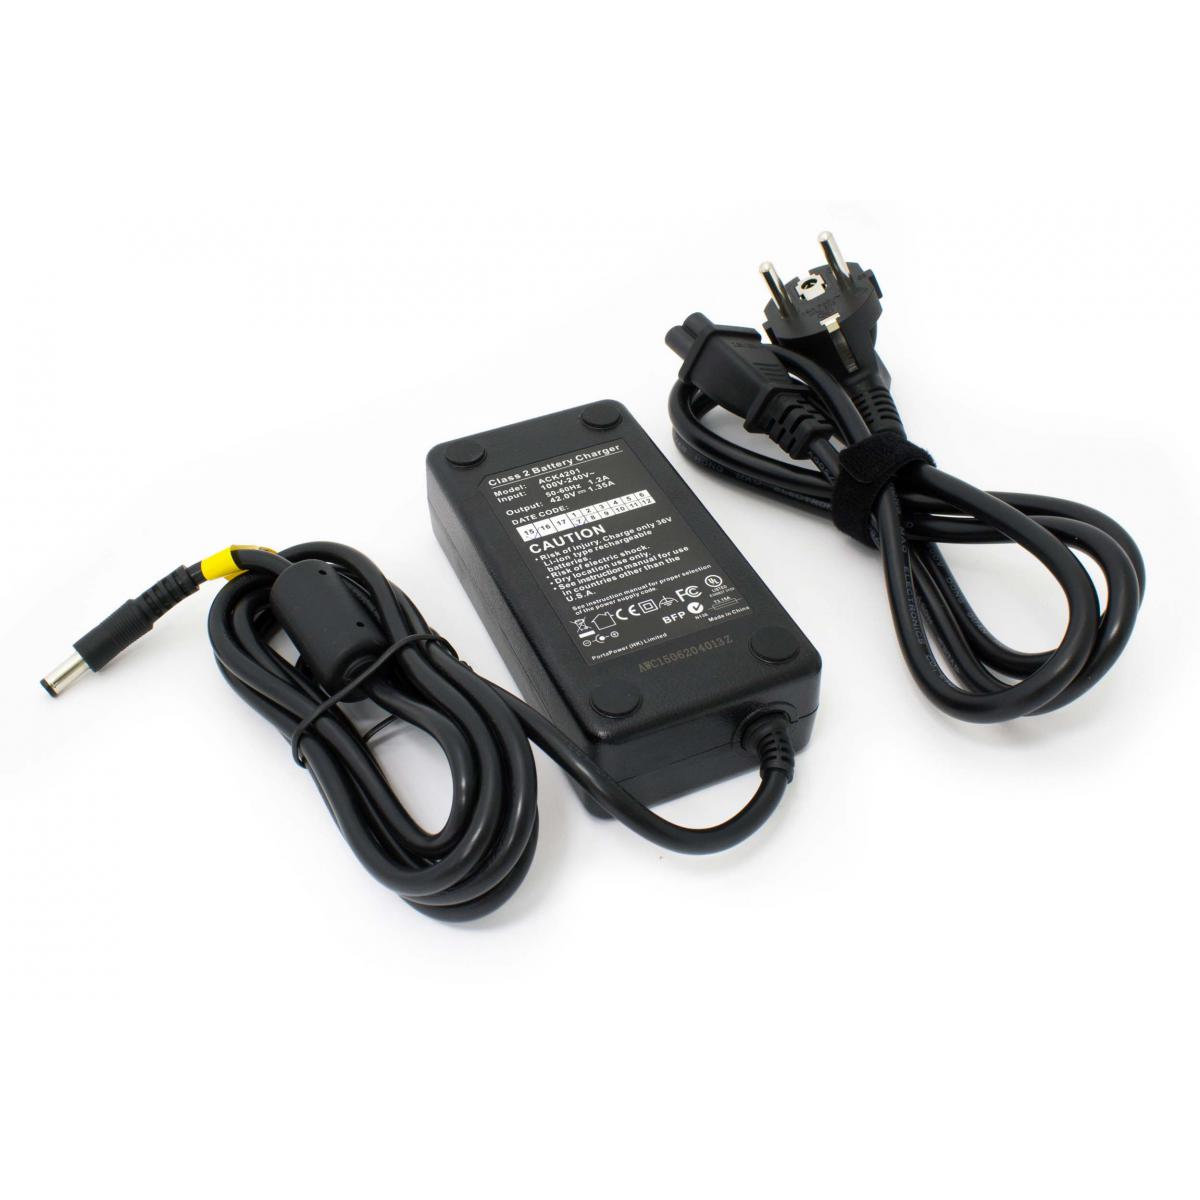 Vhbw - vhbw 220V Chargeur d'alimentation Câble de chargement 60W pour Prophete Alu Trecking comme HP1202L3. - Vélo électrique